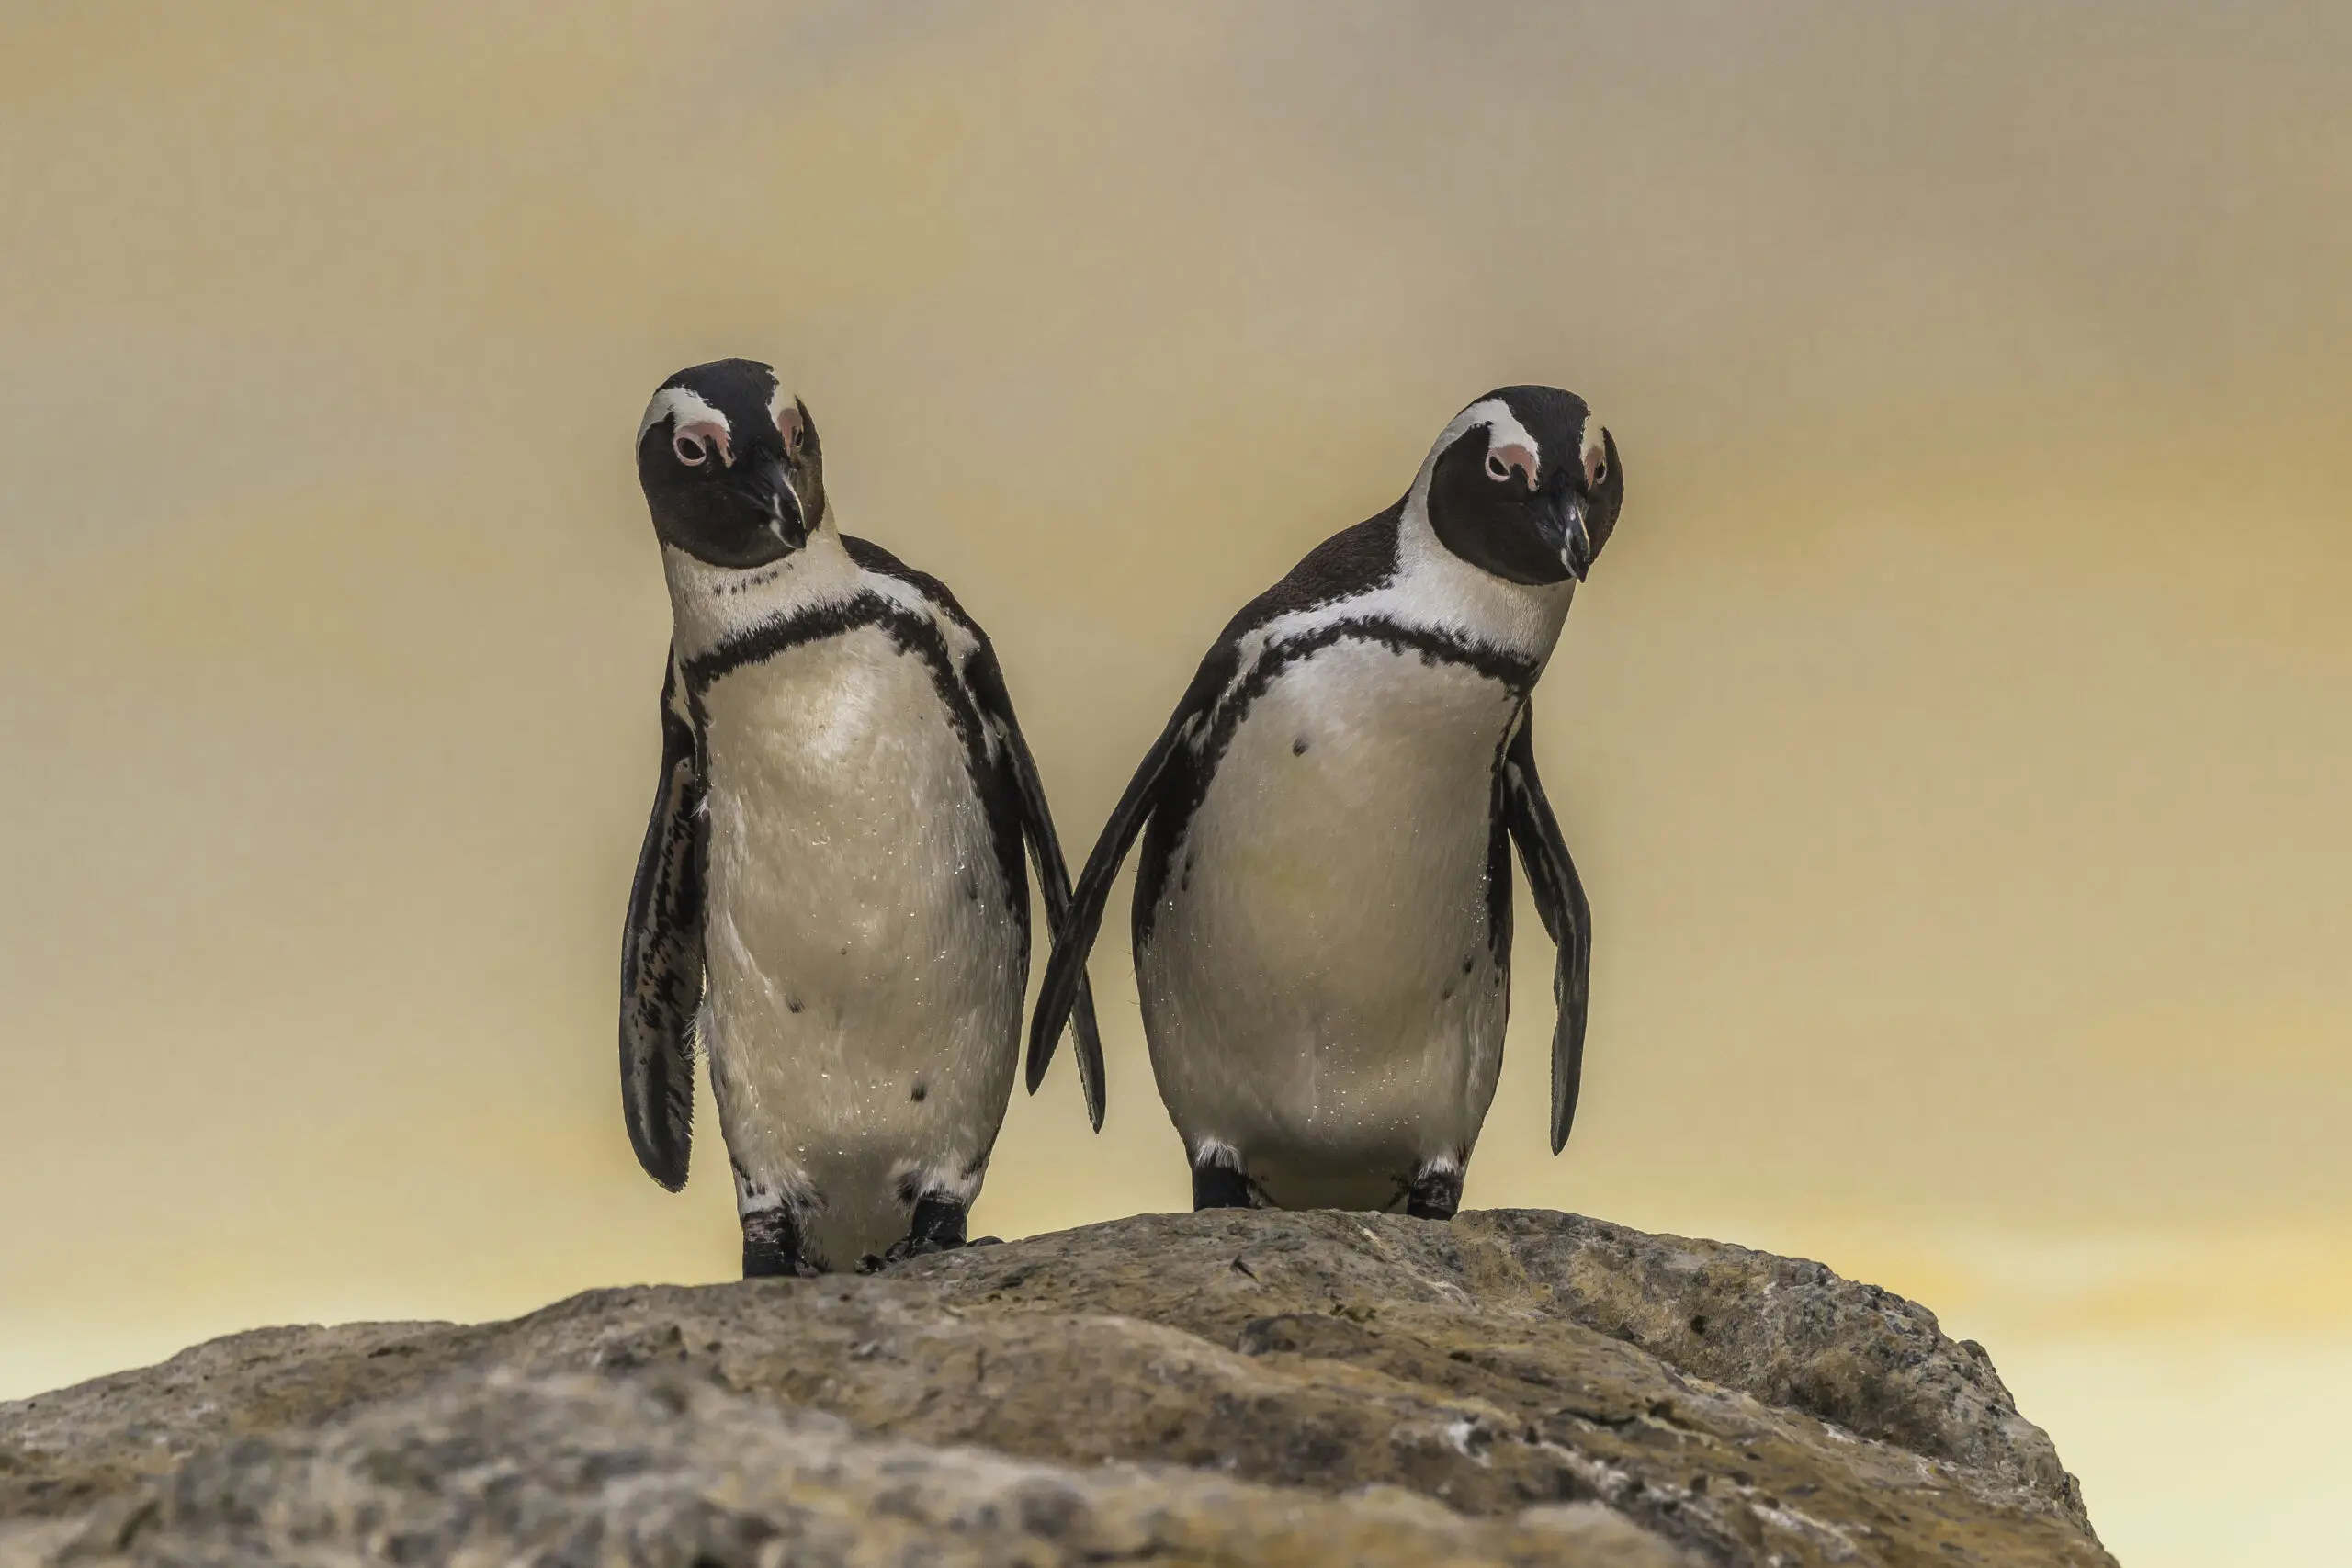 Wandbild (4730) Penguin “say what” präsentiert: Tiere,Aus Afrika